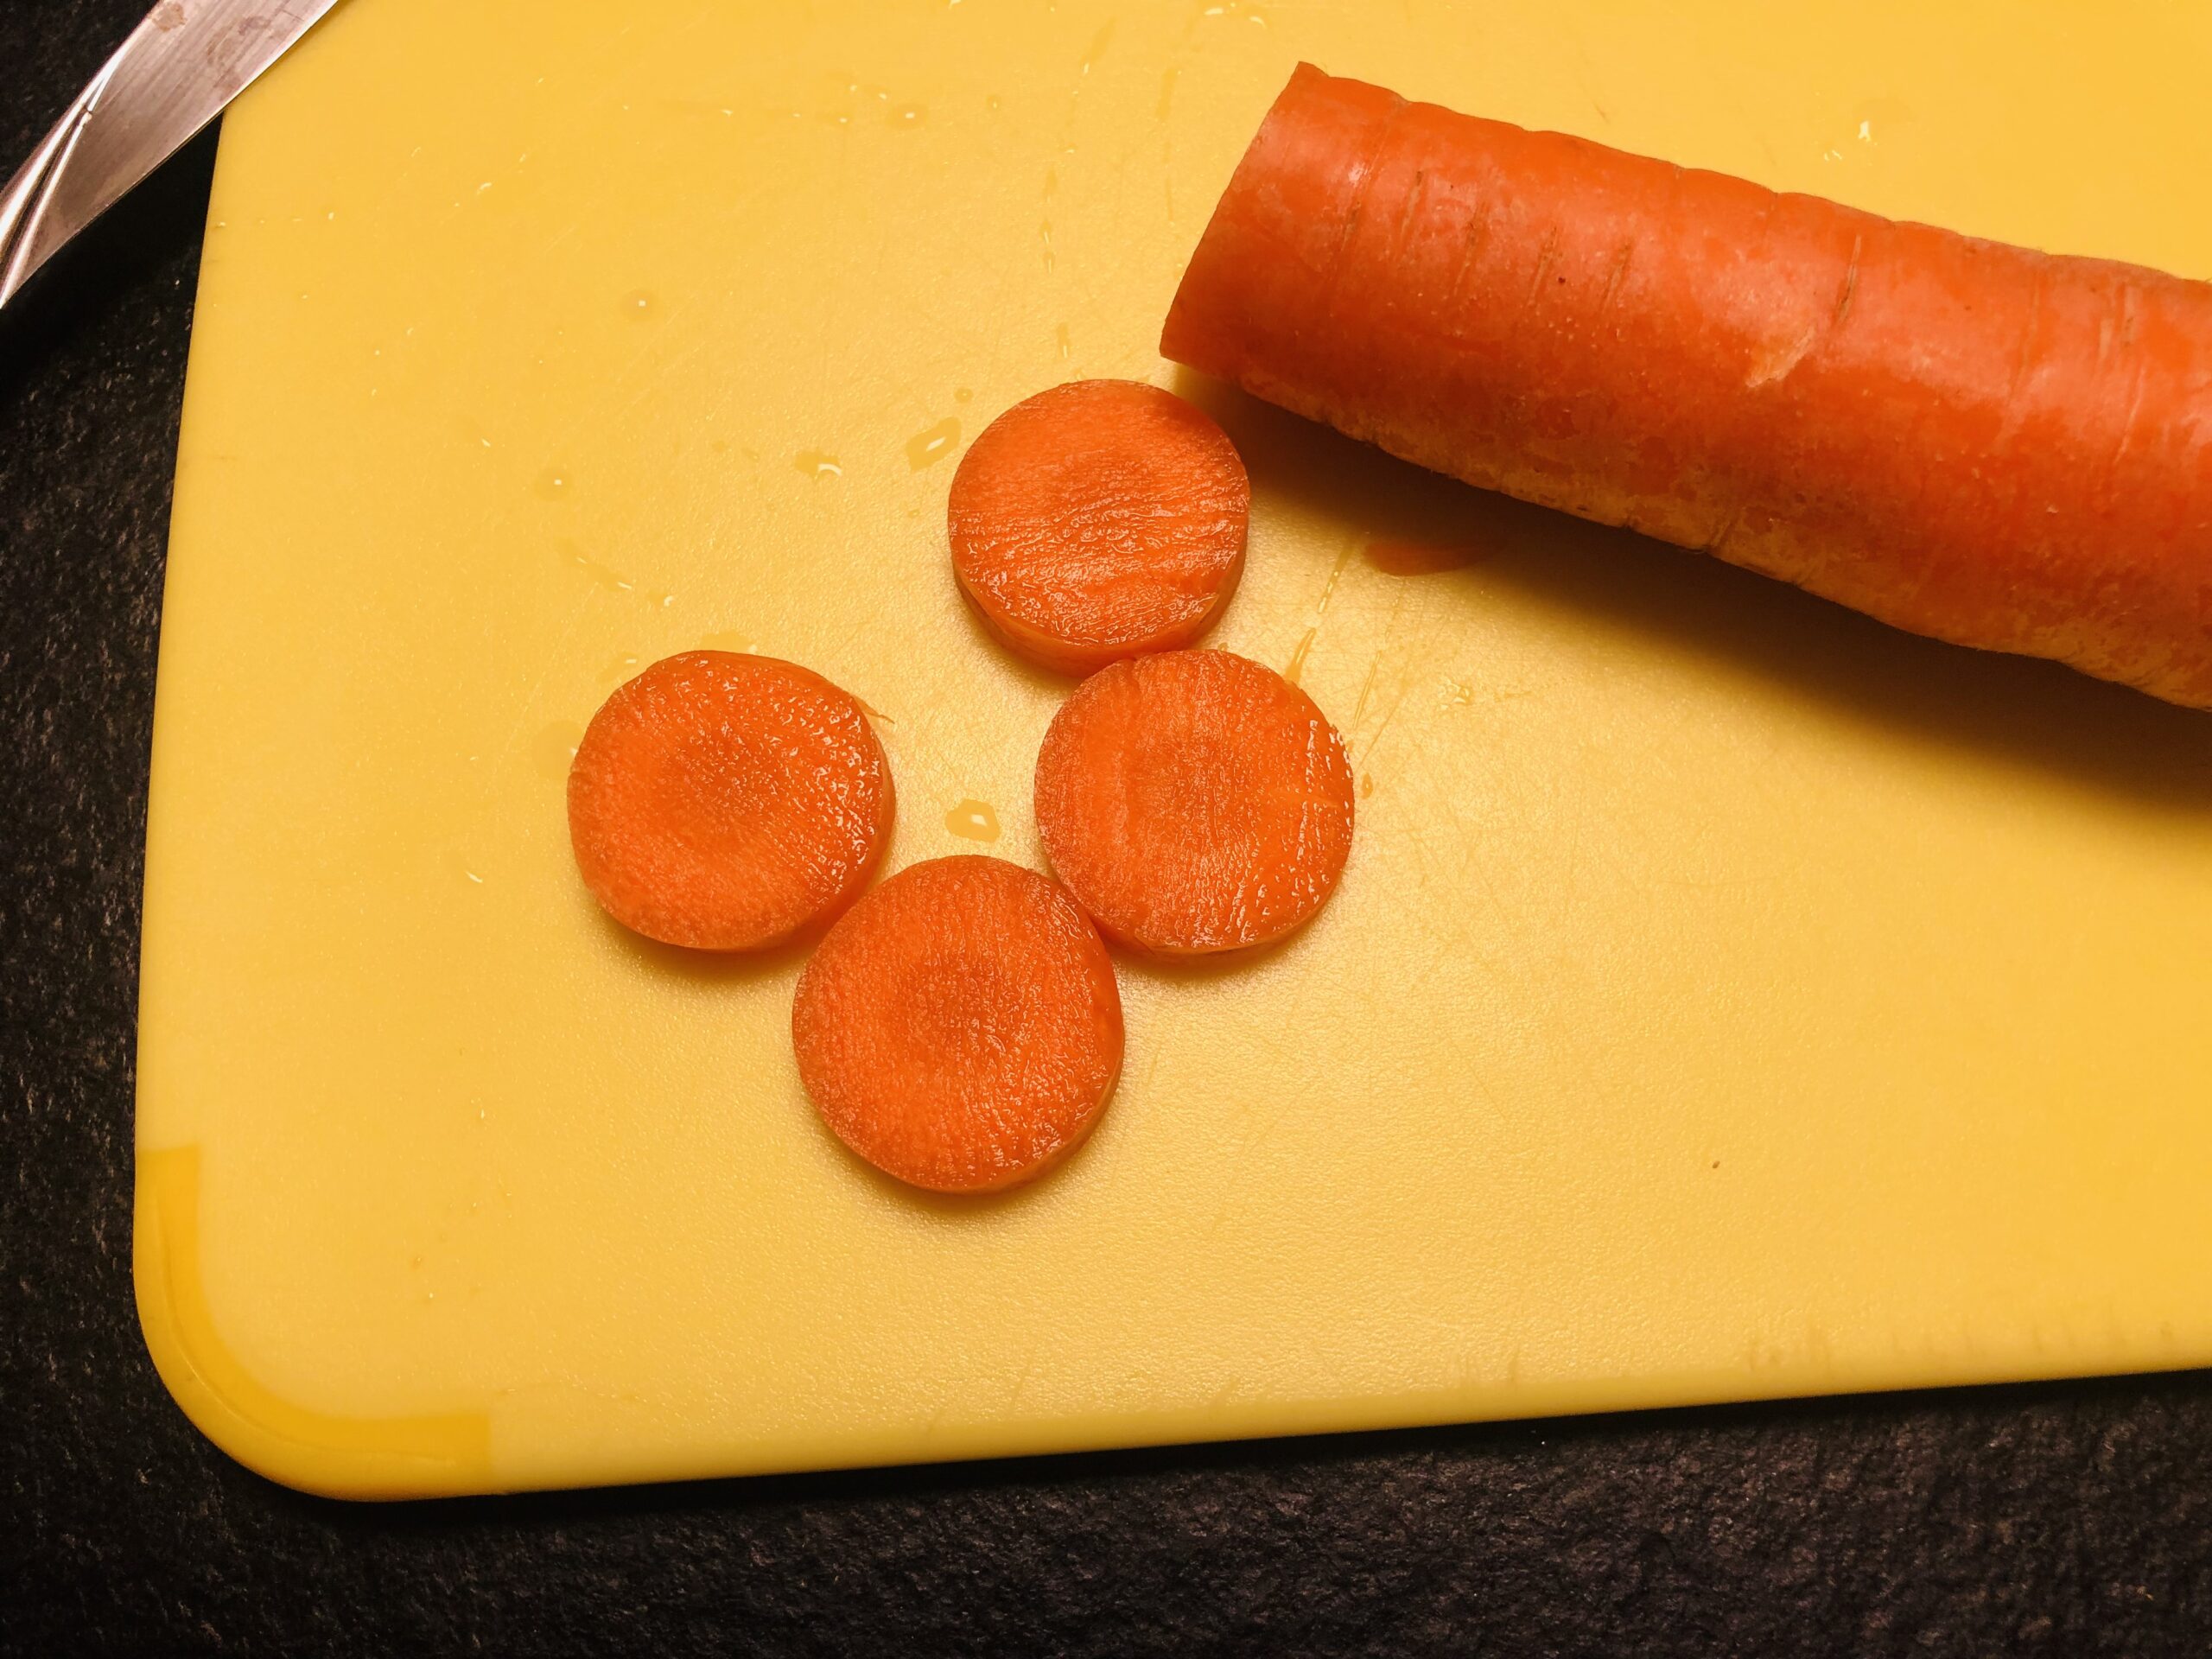 Bild zum Schritt 2 für das Bastel- und DIY-Abenteuer für Kinder: 'Dann schneidet ihr die Karotte in Scheiben.'